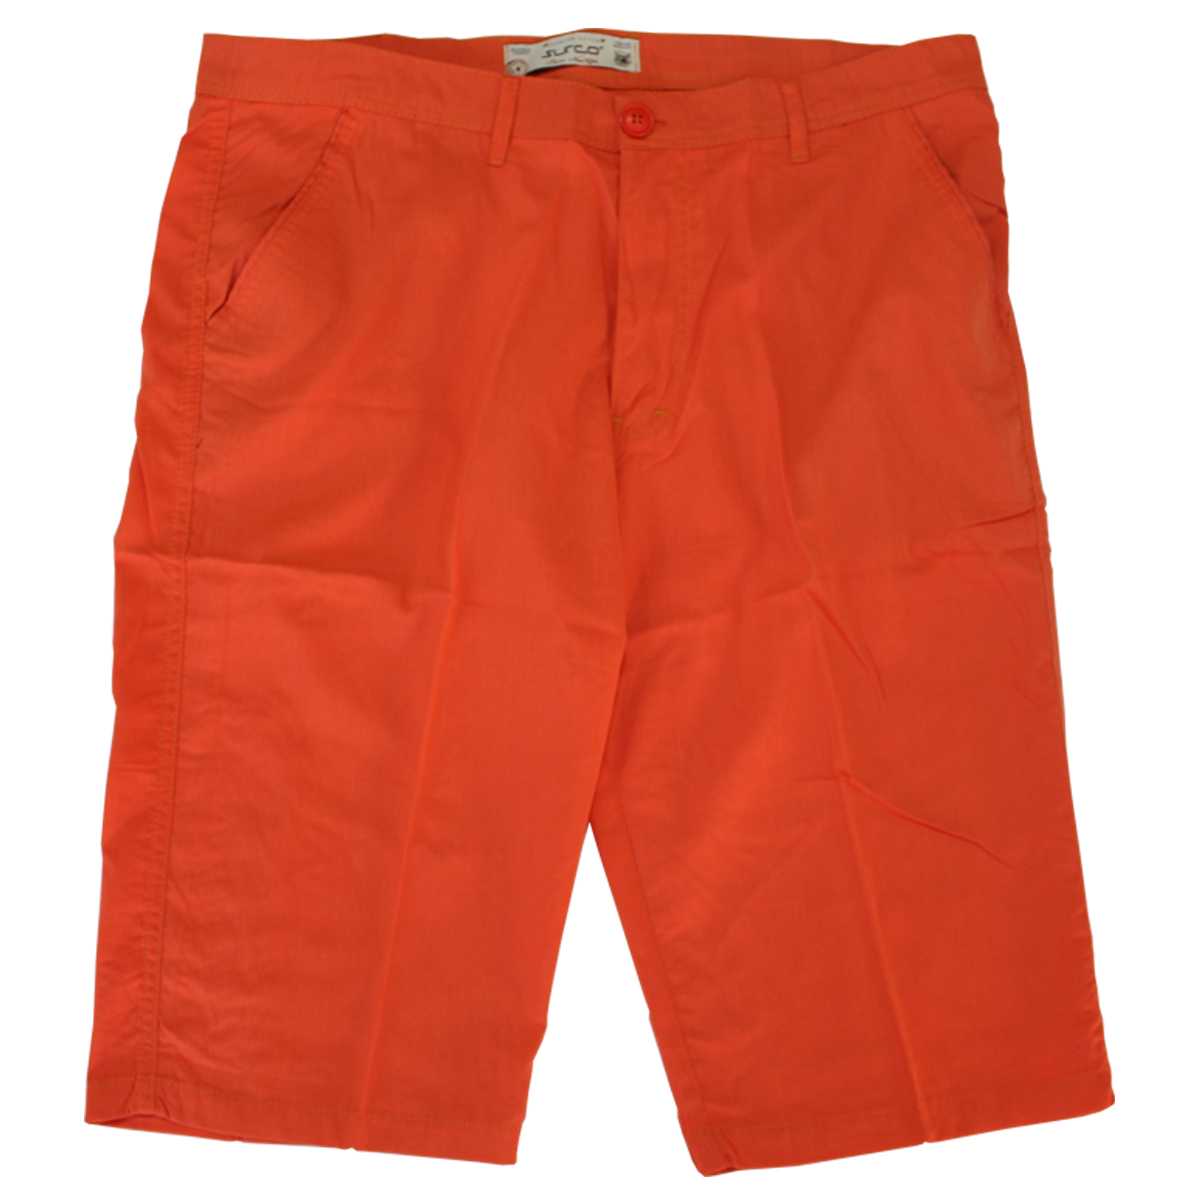 Pantalon trei sferturi portocaliu, Marime 56 Nespecificat